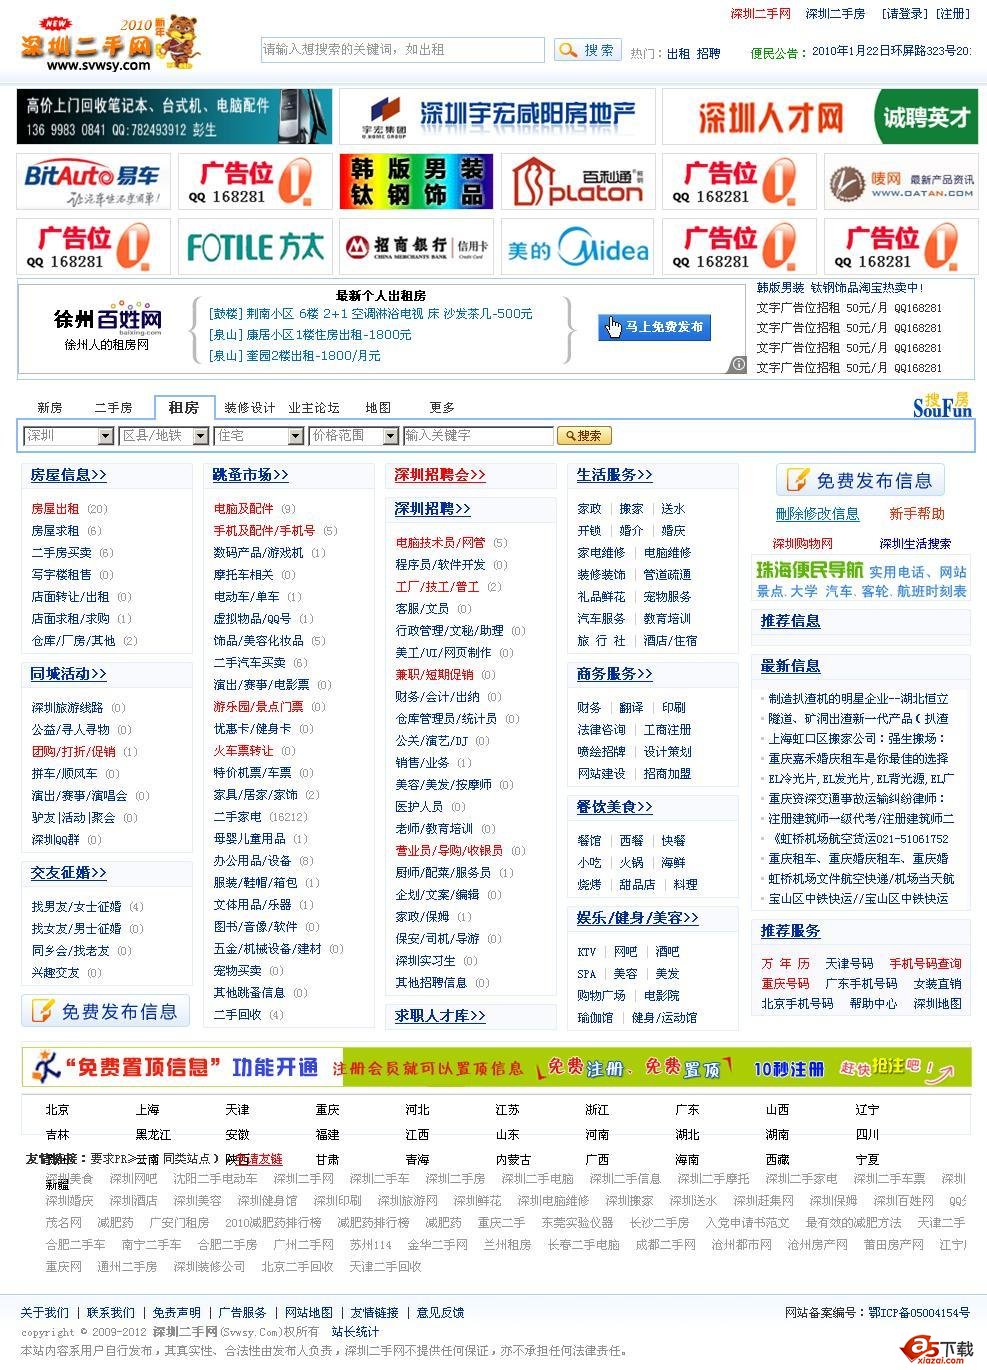 深圳二手信息网